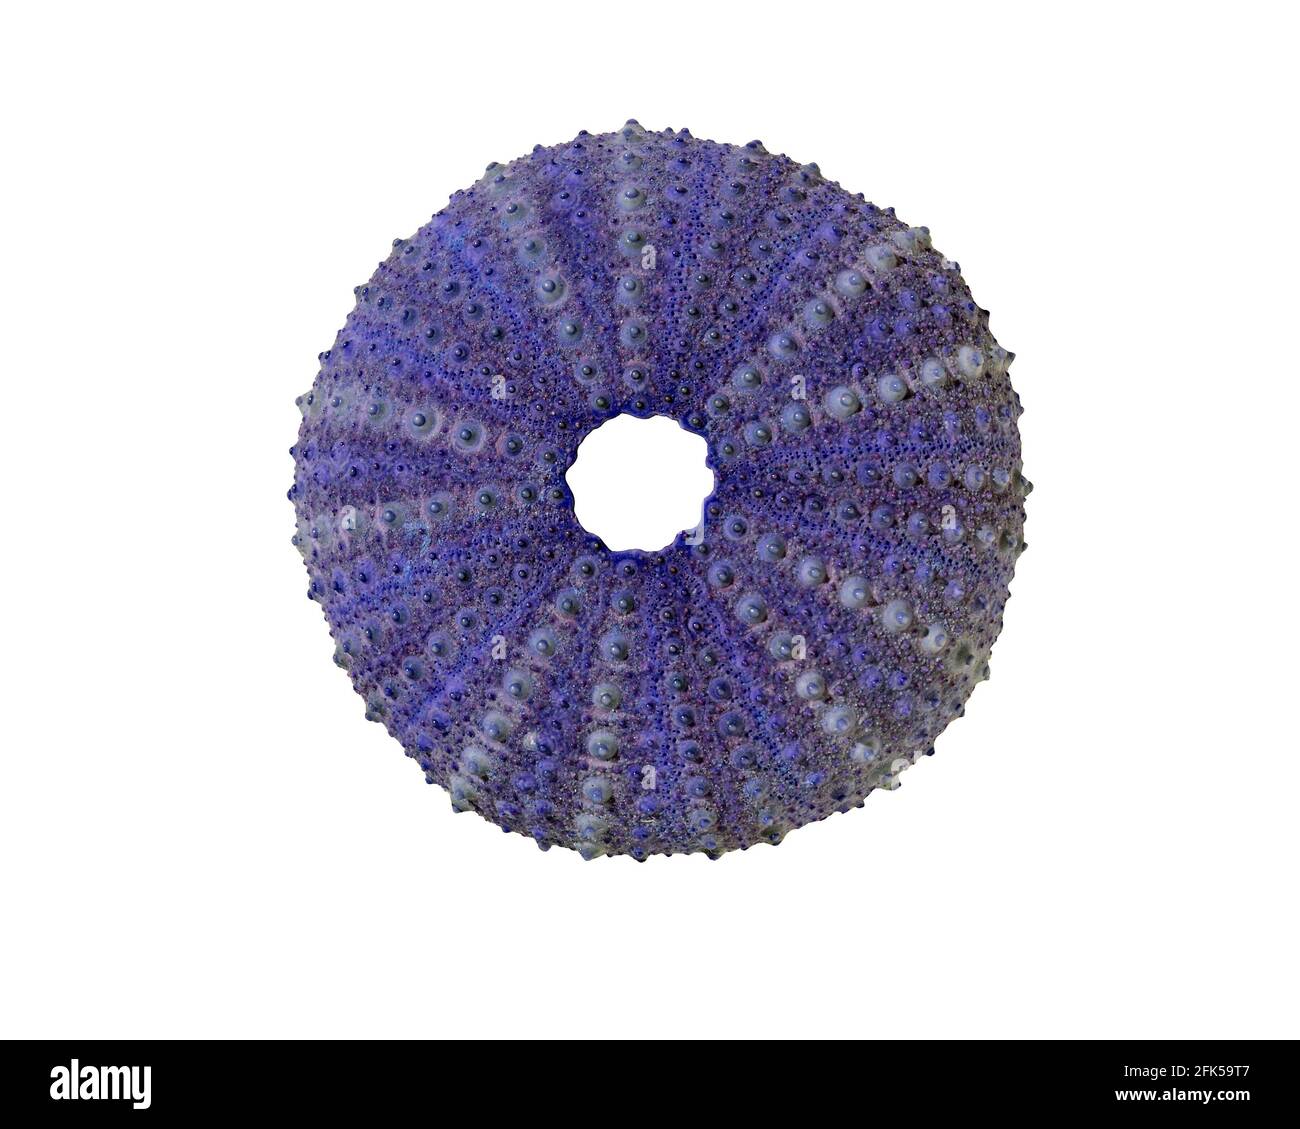 Una conchiglia blu di ricci di mare, che mostra la sua simmetria a 5 volte, isolata su uno sfondo bianco Foto Stock